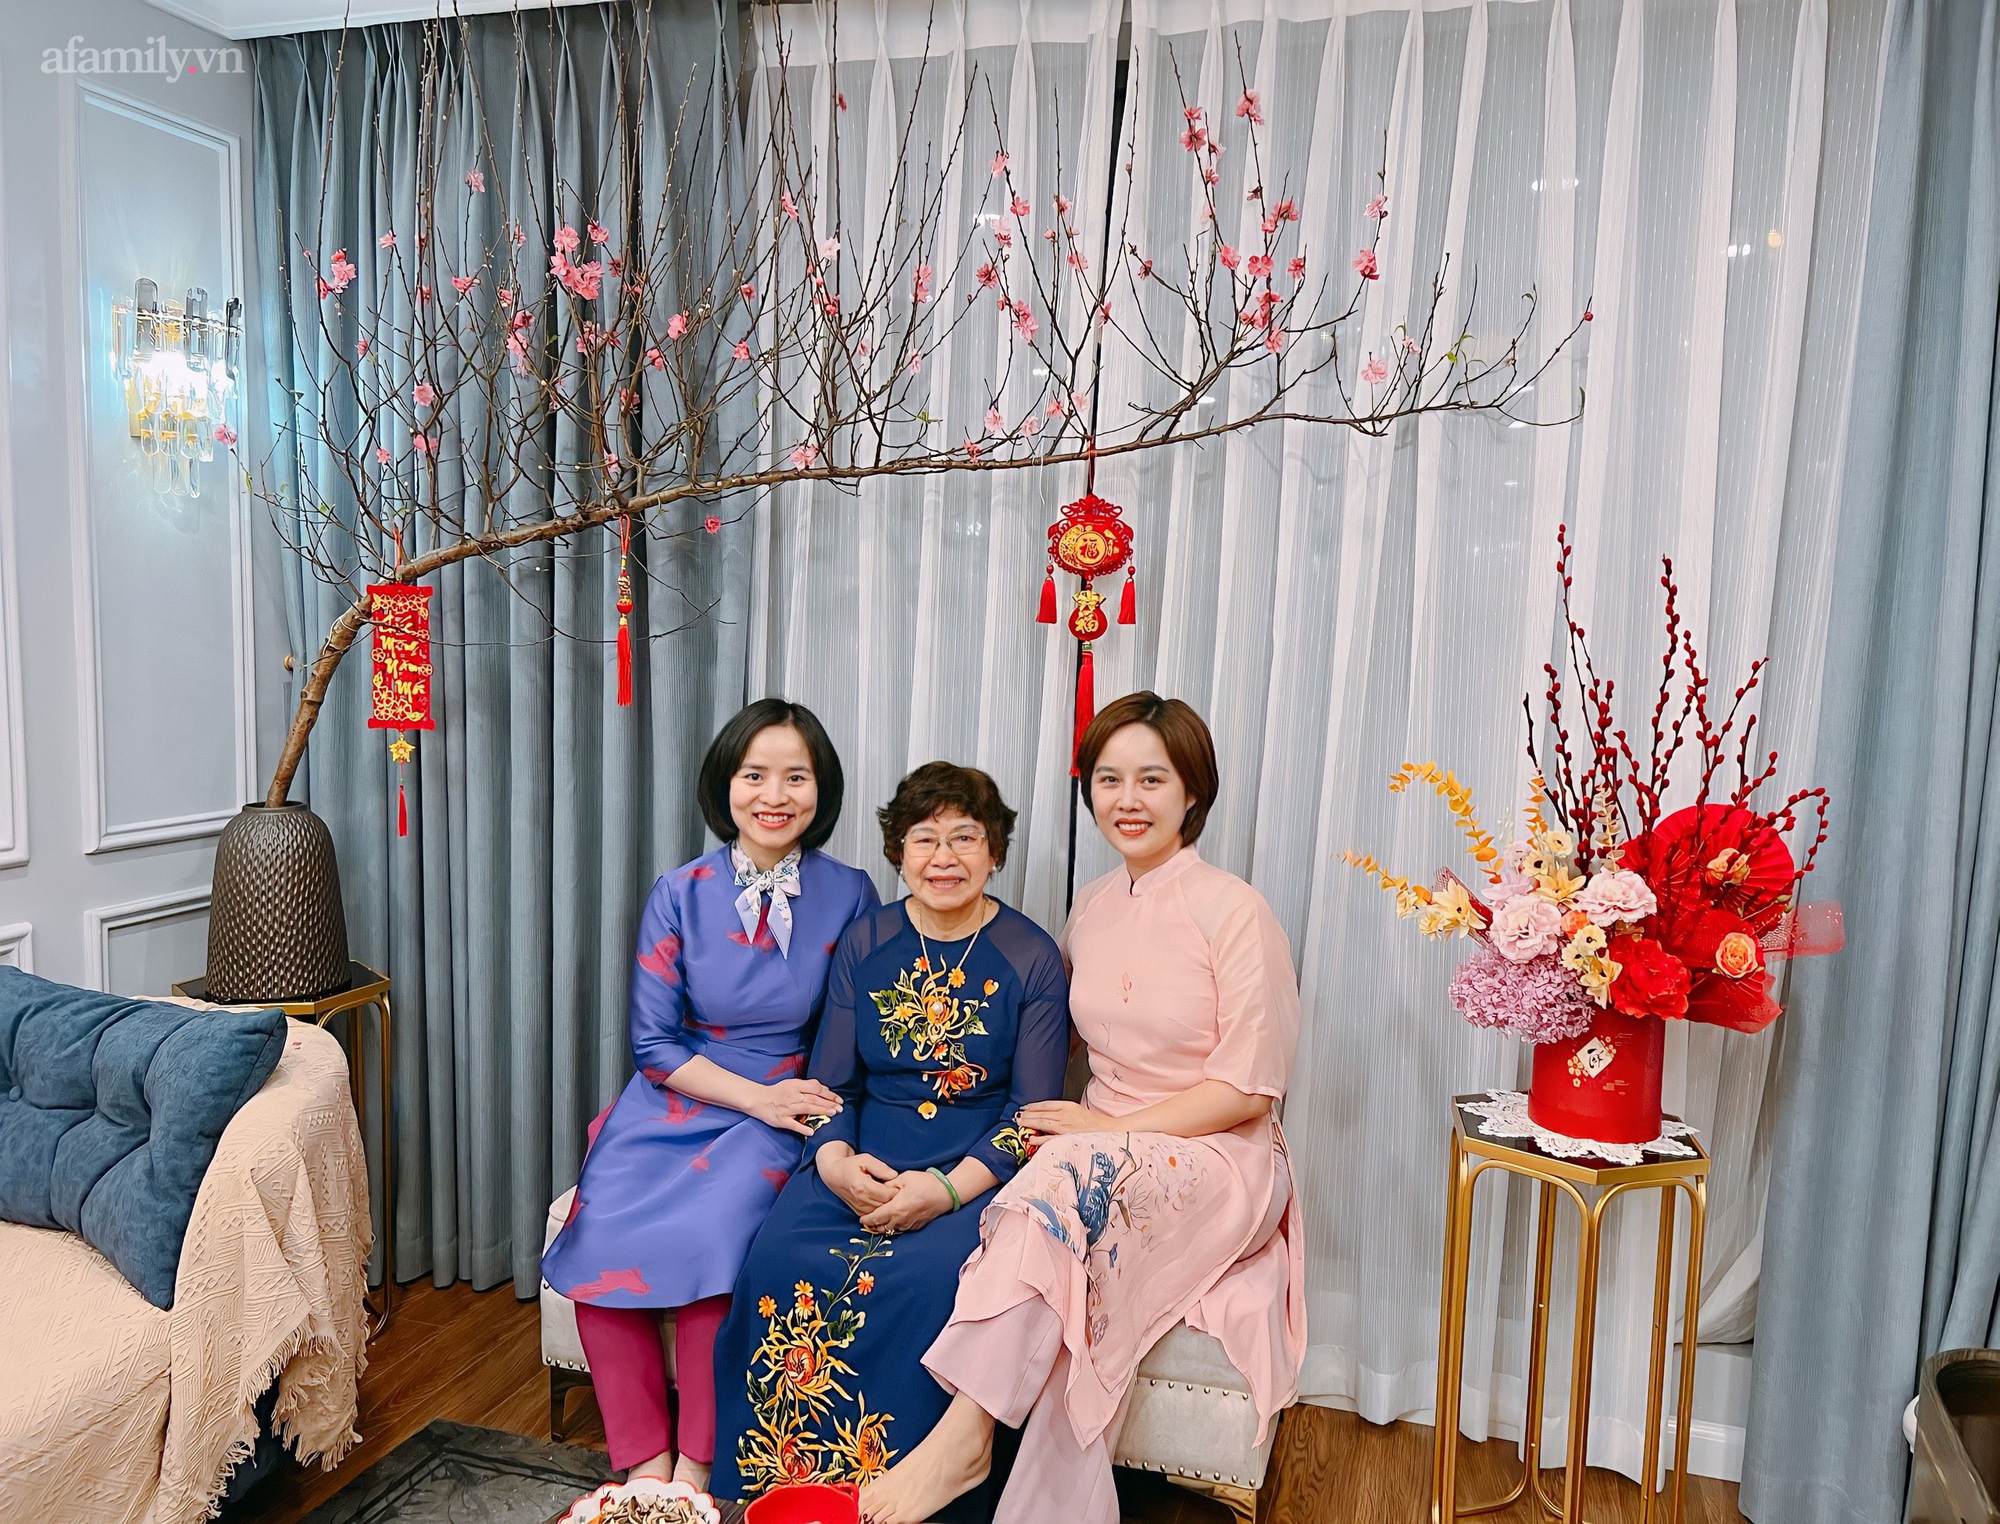 Mùng 3 Tết không gian sống của gia đình Hà Nội vẫn đẹp nức nở nhờ khéo léo trang trí hoa tươi và các món đồ decor  - Ảnh 5.